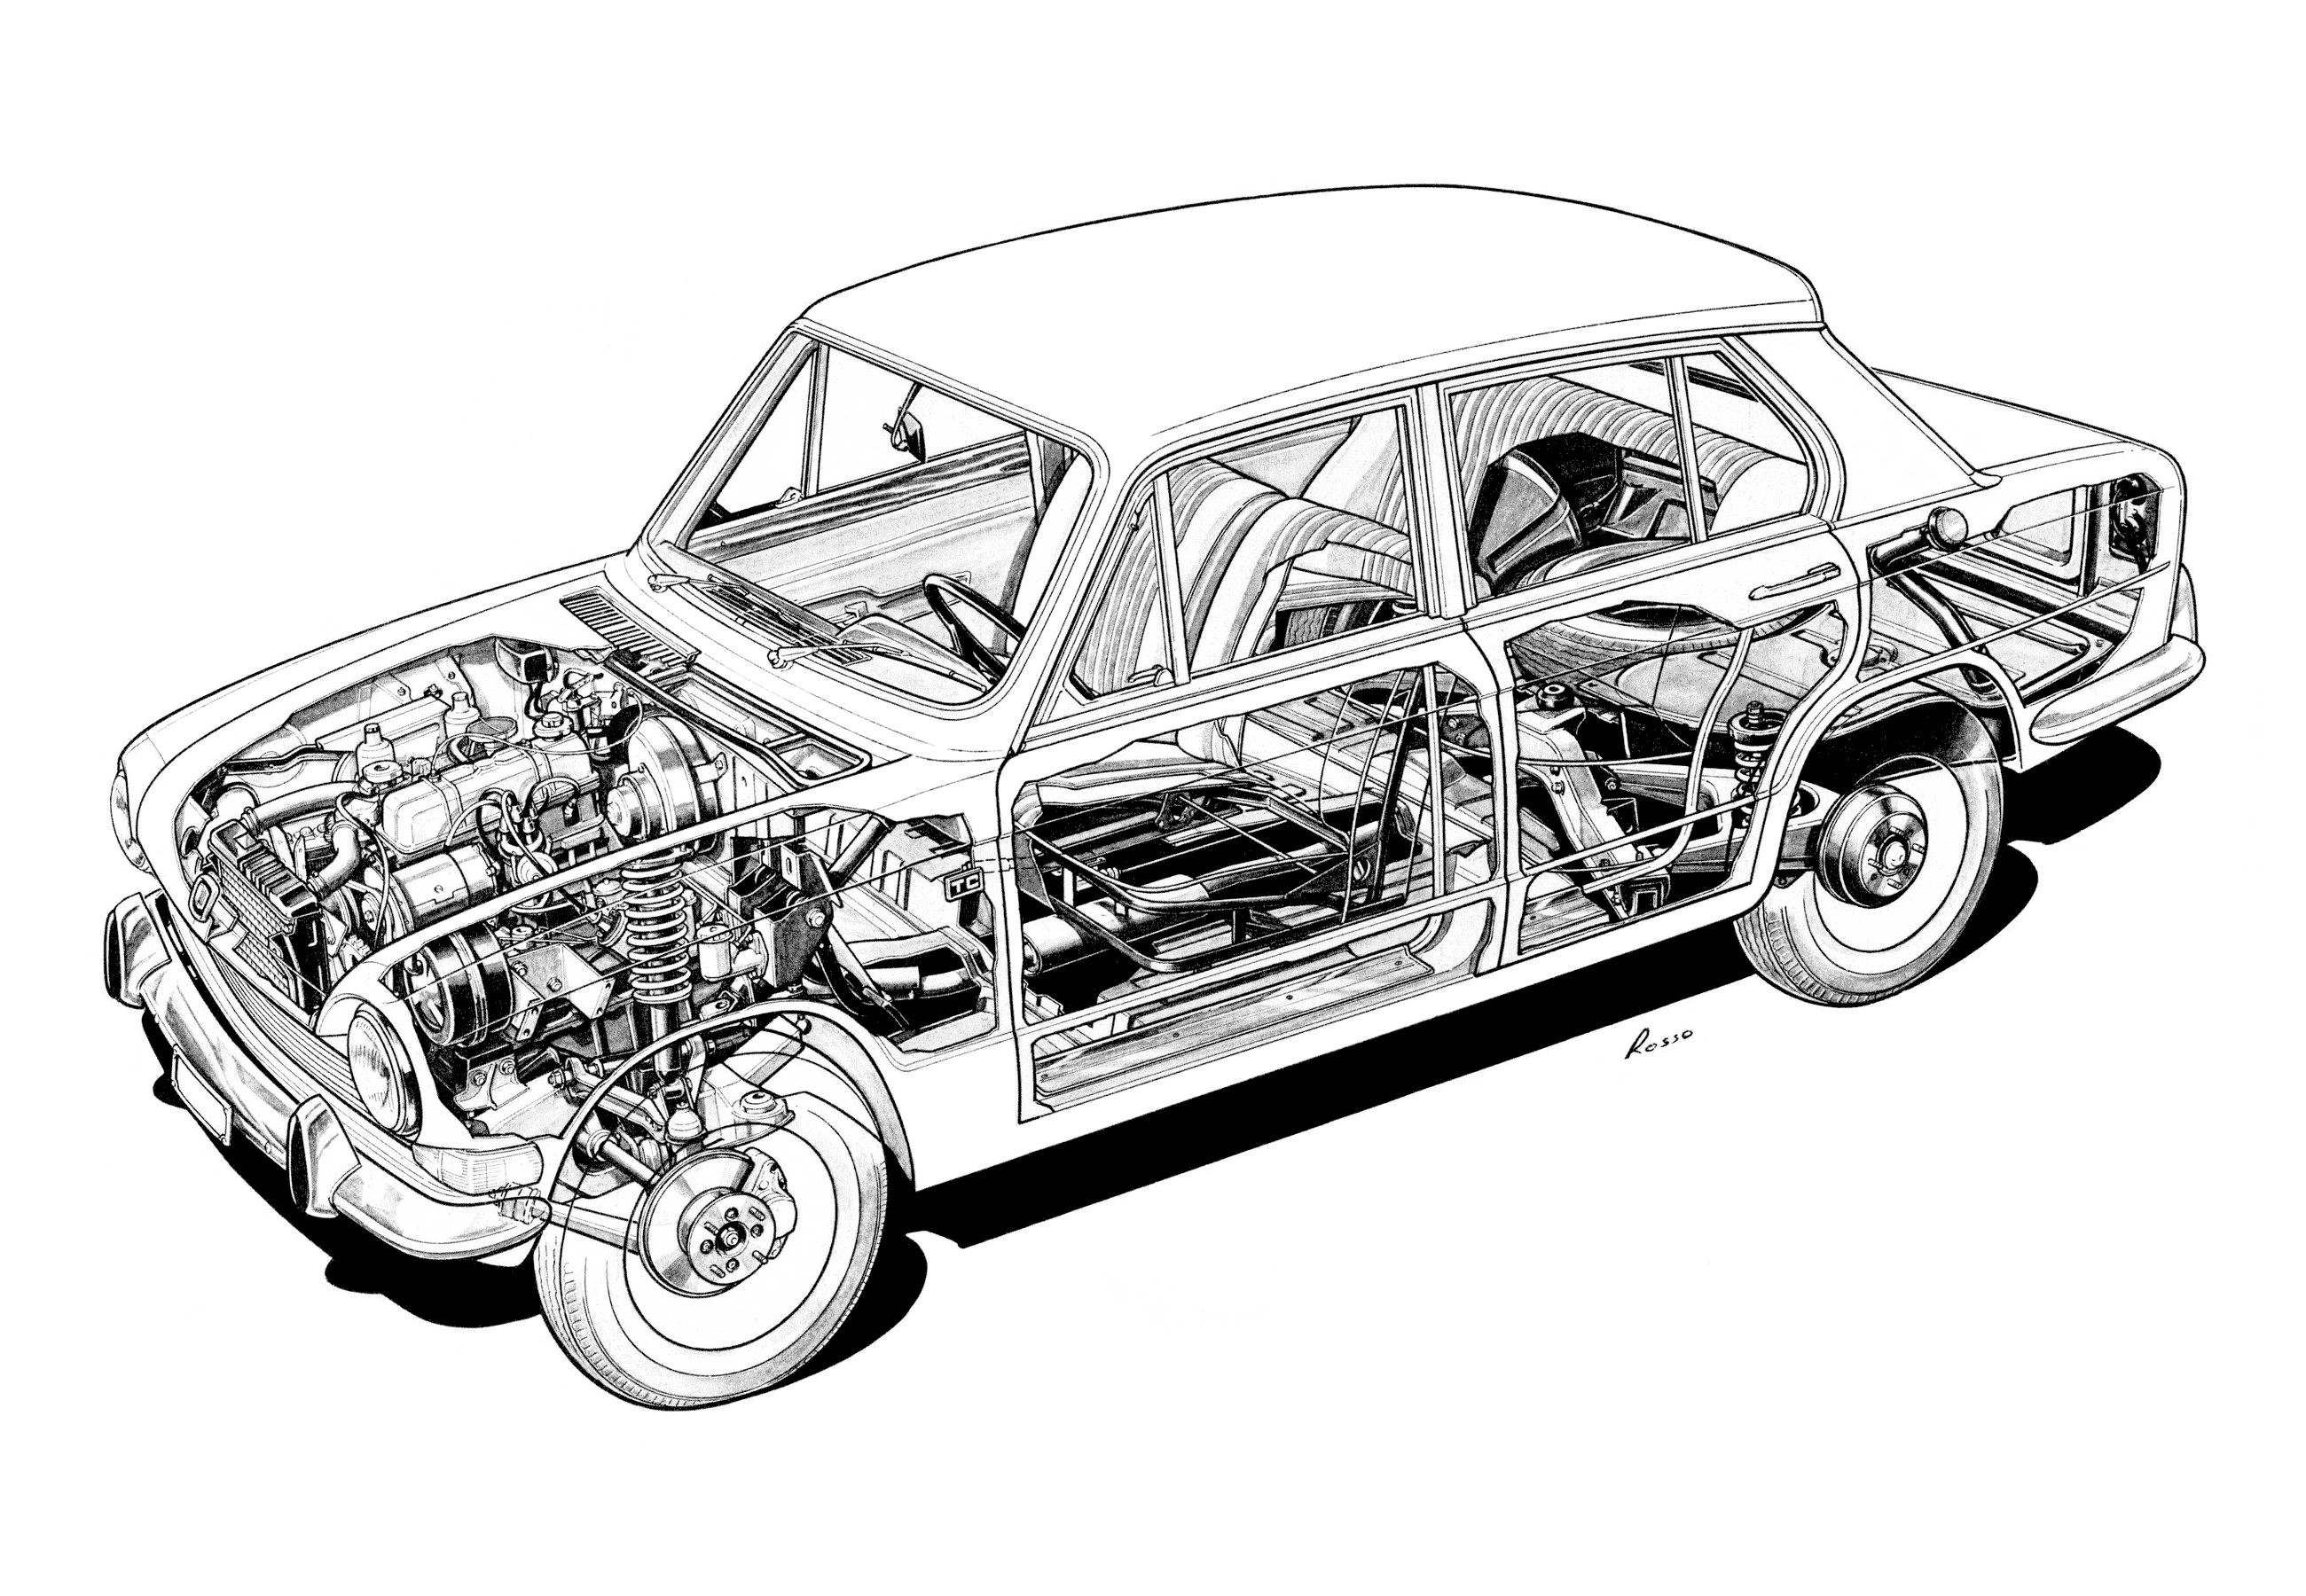 Triumph 1300 cutaway drawing